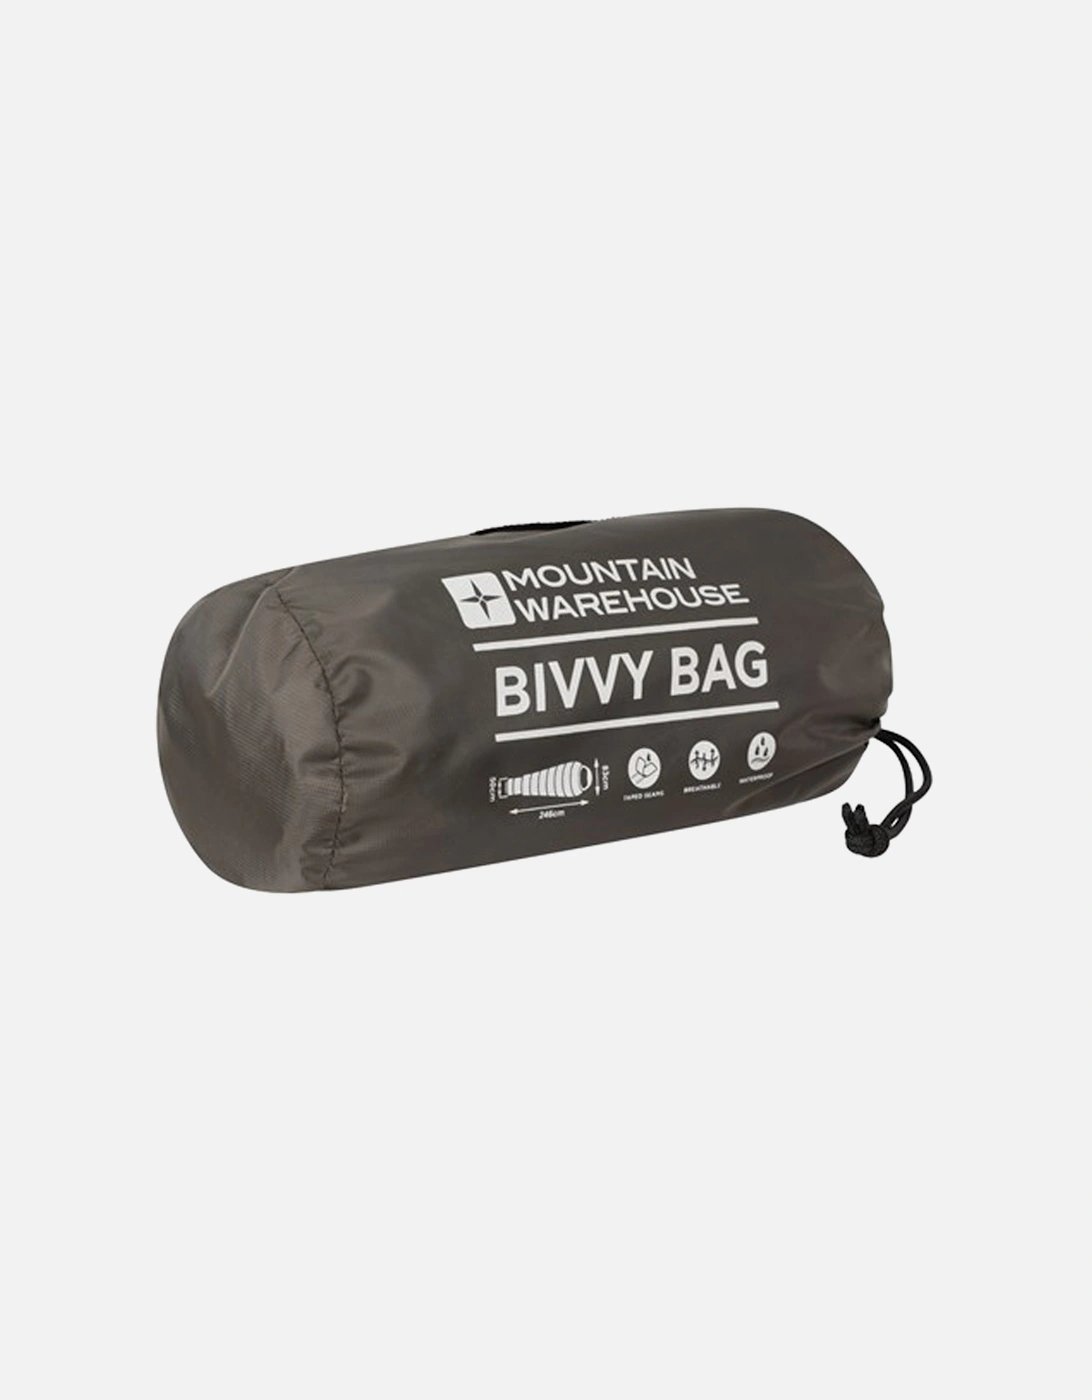 Ripstop Bivy Bag